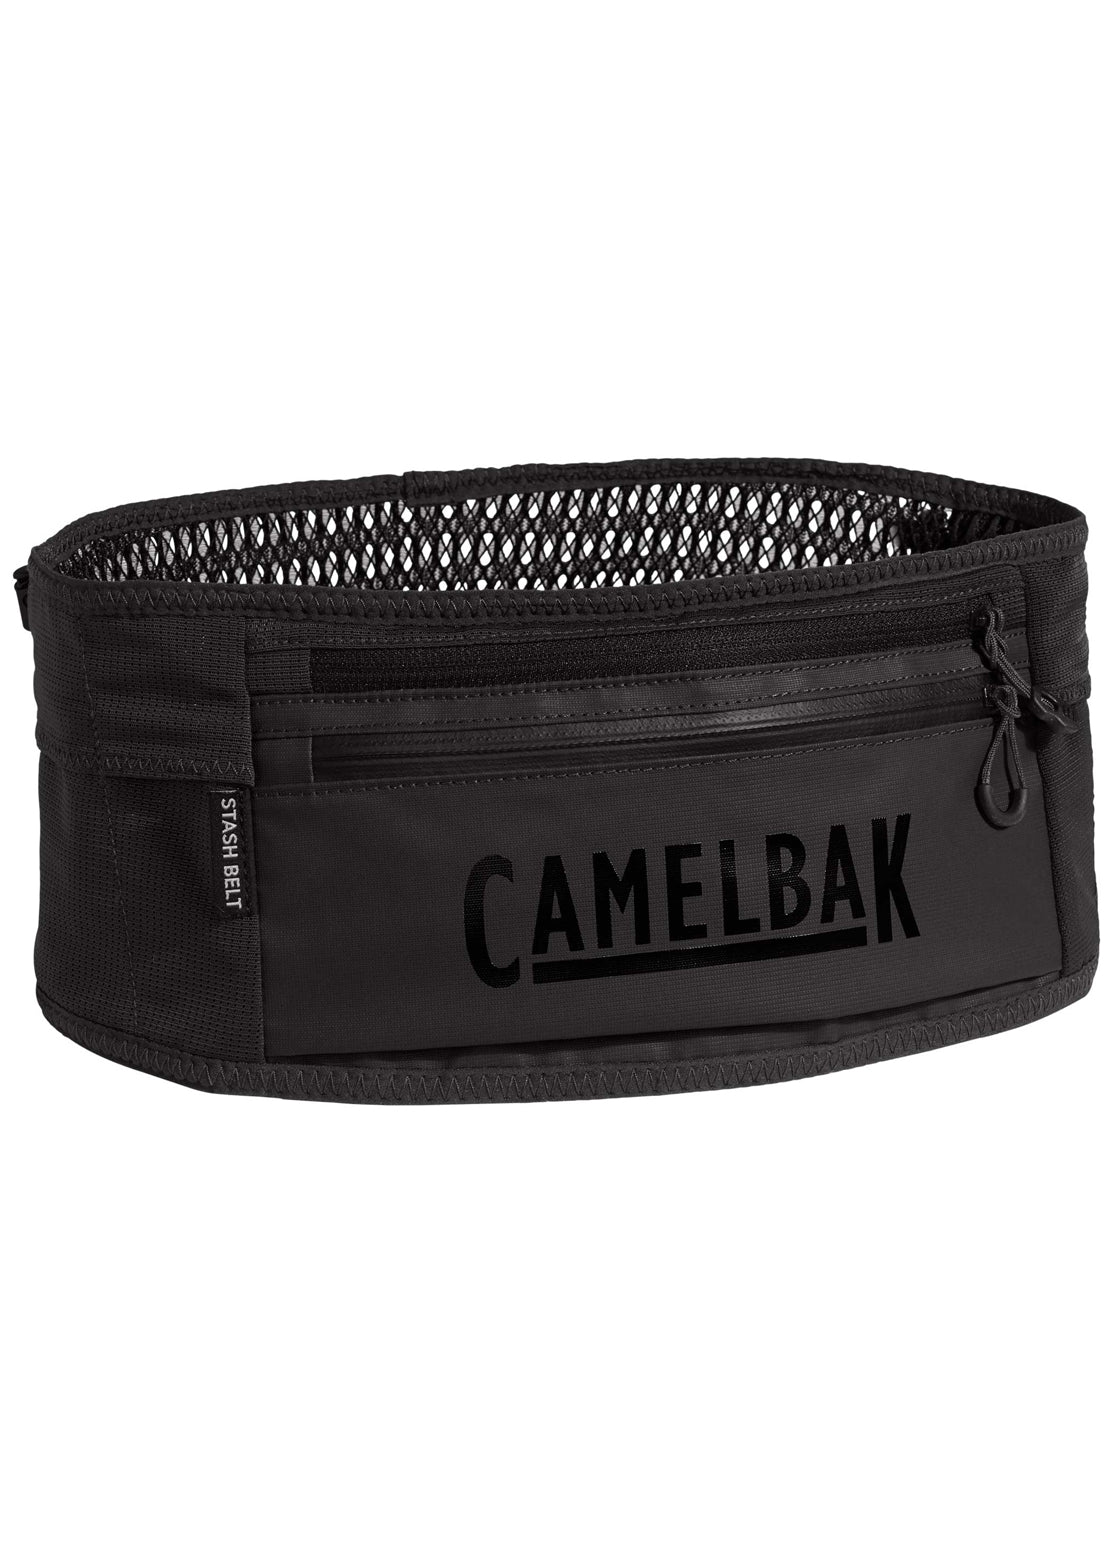 Camelbak Stash Belt Hydration Pack Black